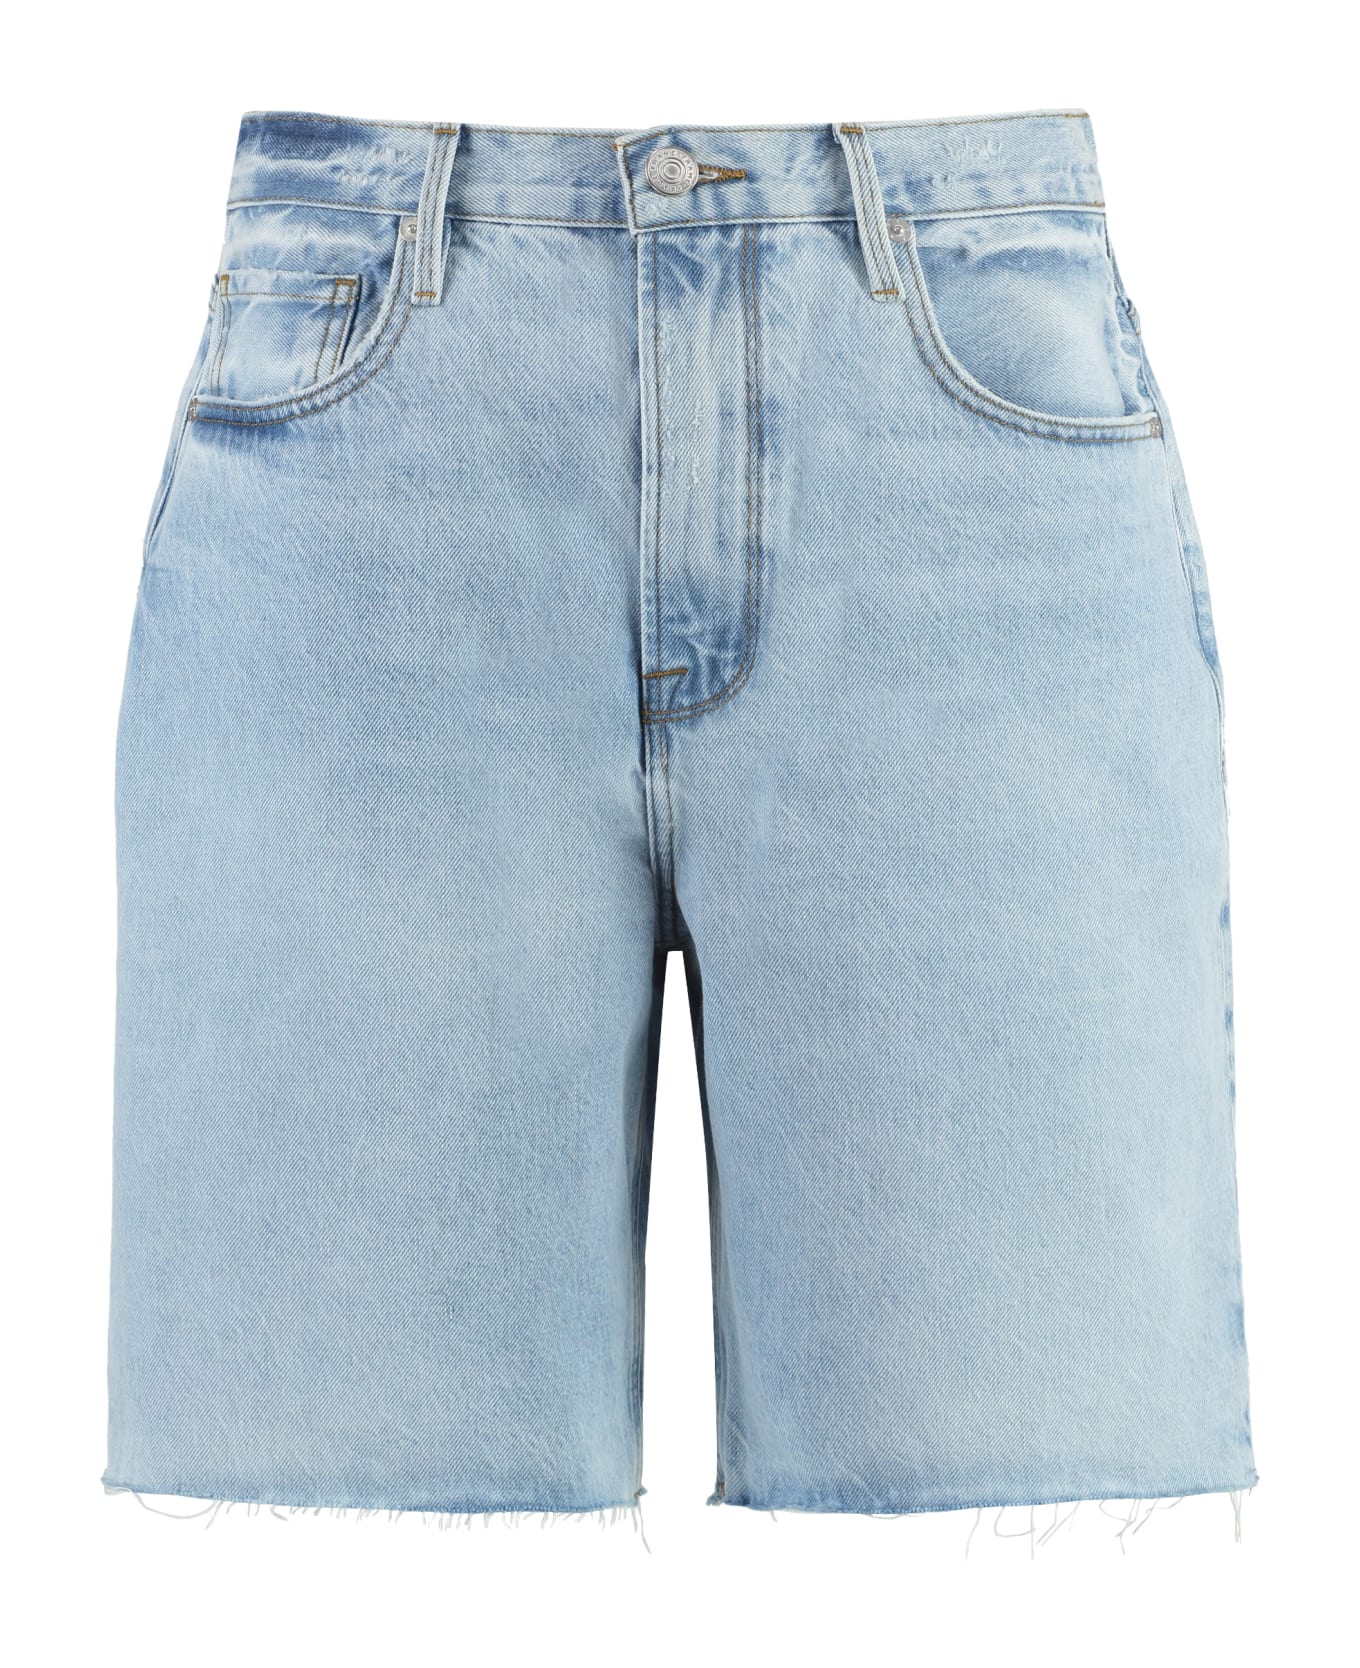 Frame Denim Shorts - Rssm Jeans